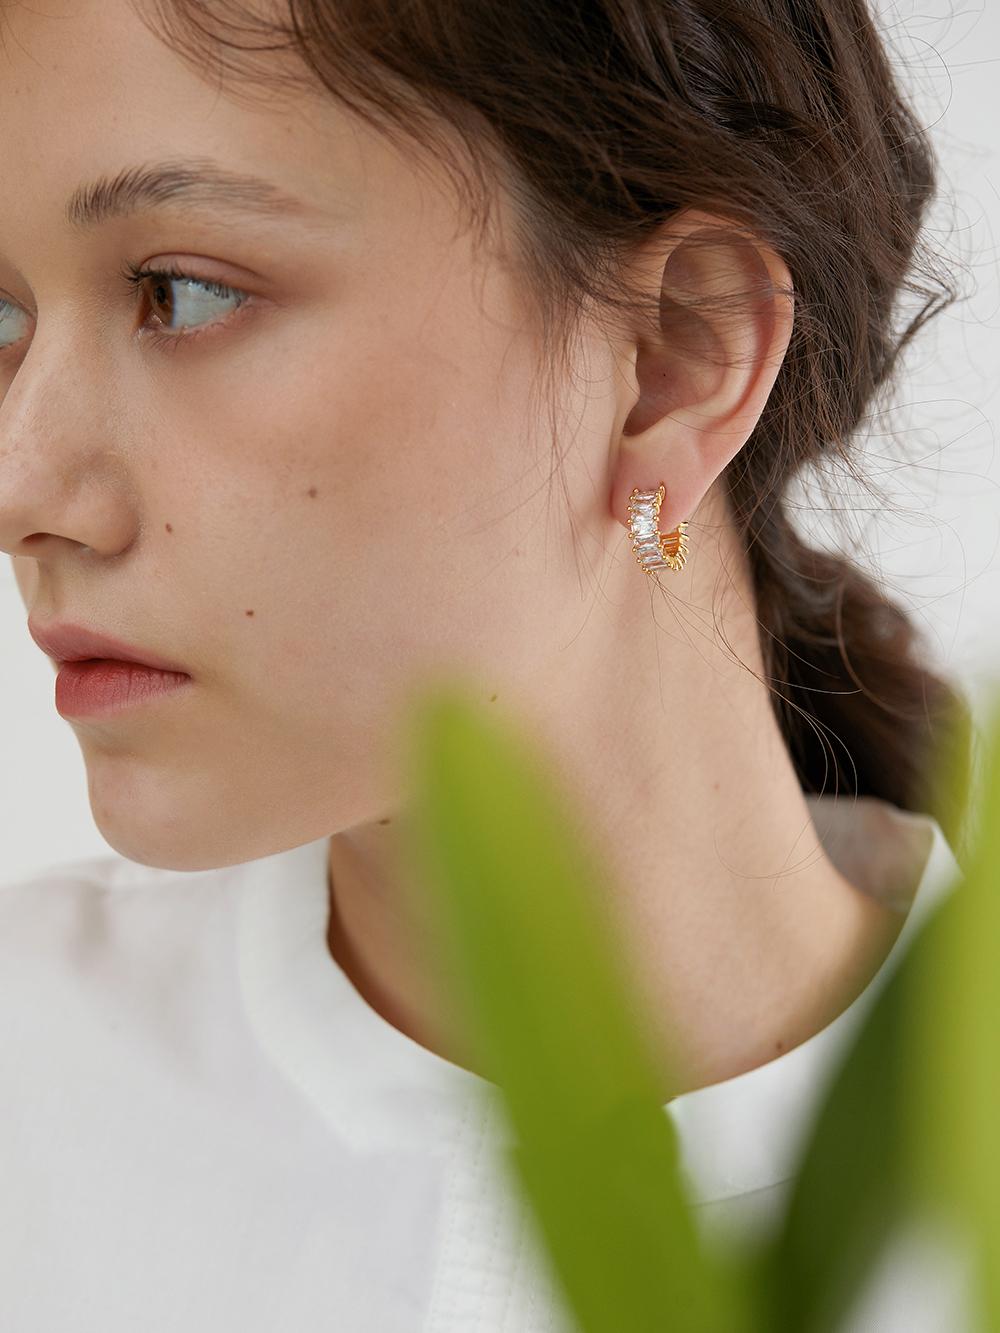 Sparkling Gemstones Earrings, Everyday Minimalist Paved Stones Studs Hoops